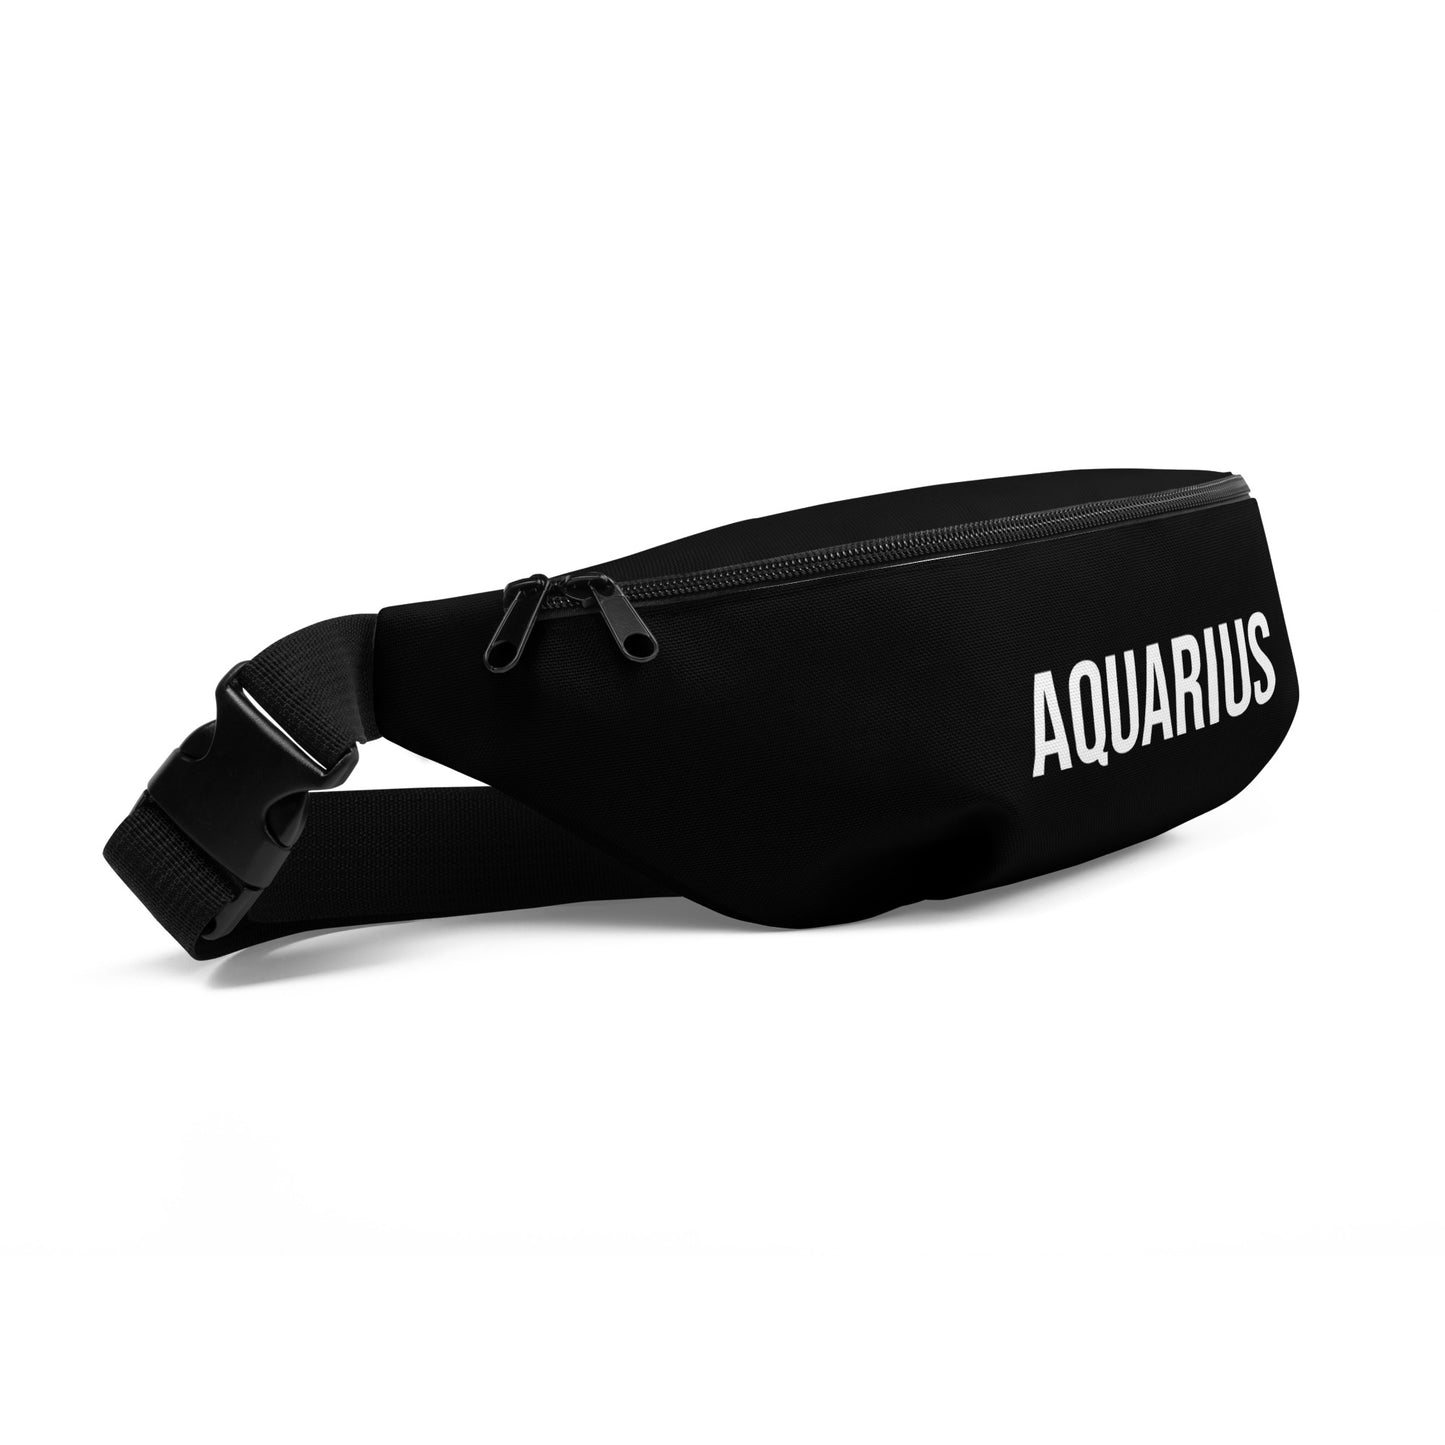 Aquarius Belt Bag (Black)